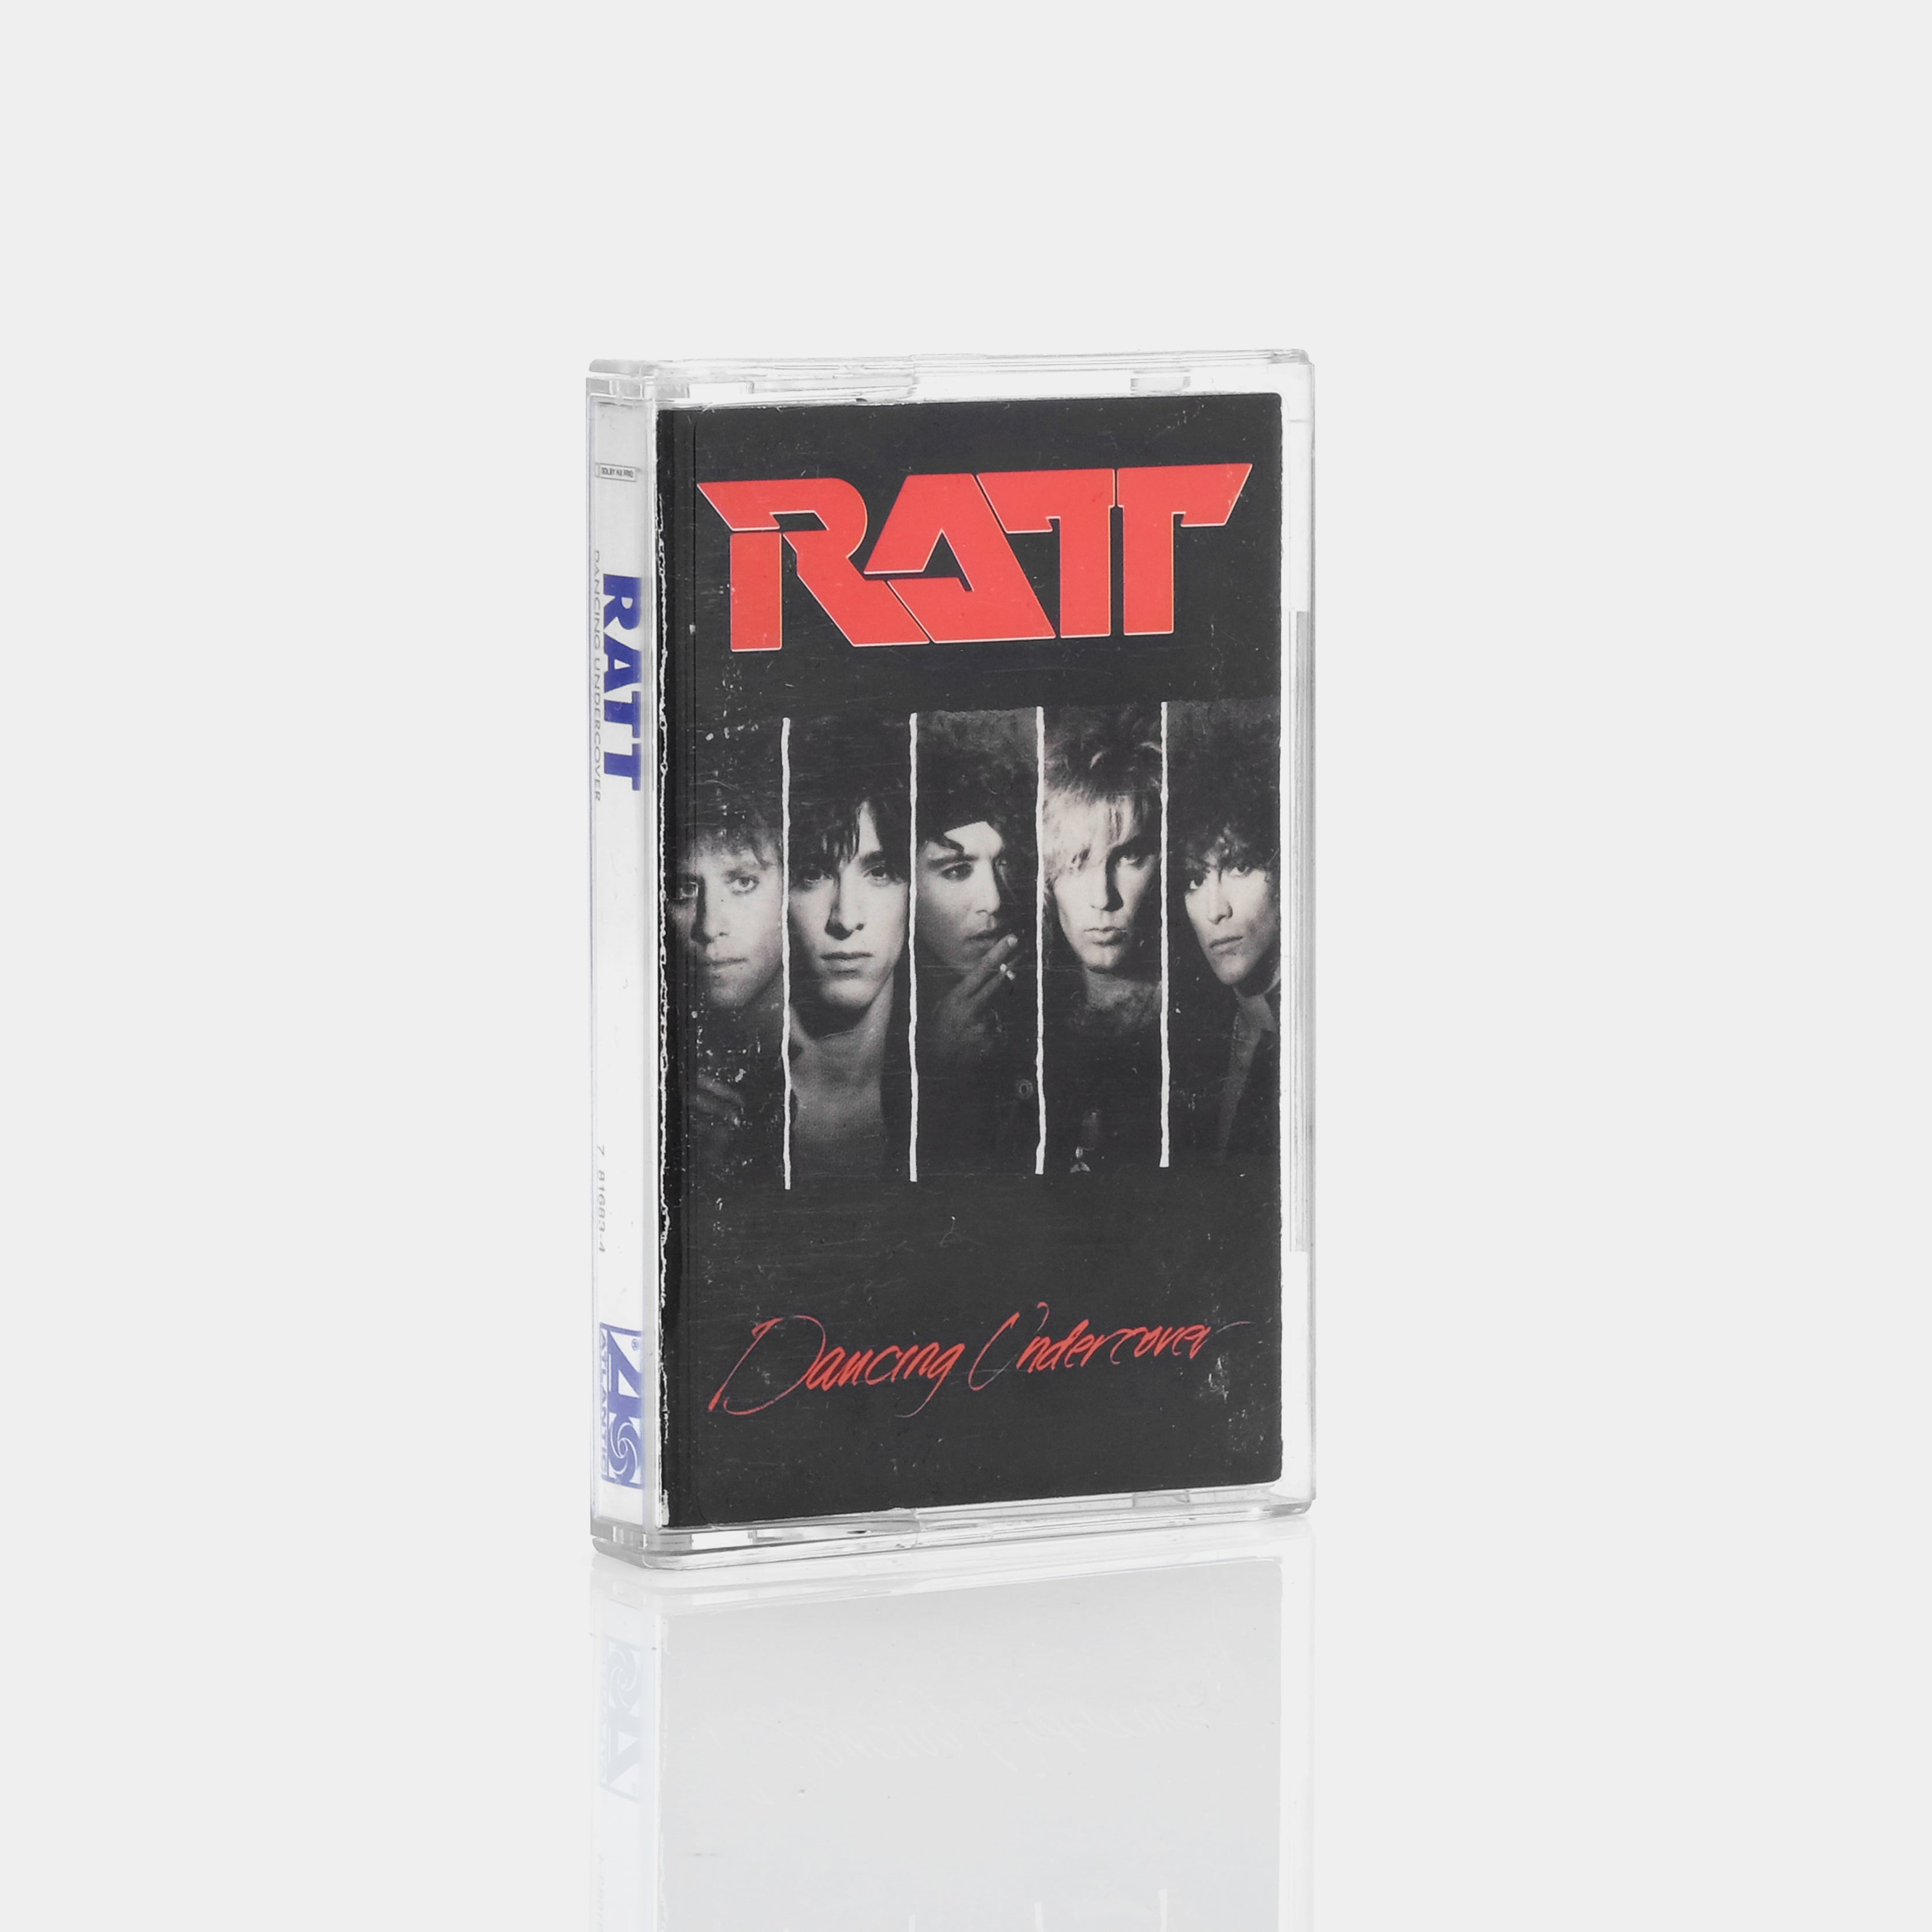 Ratt - Dancing Undercover Cassette Tape